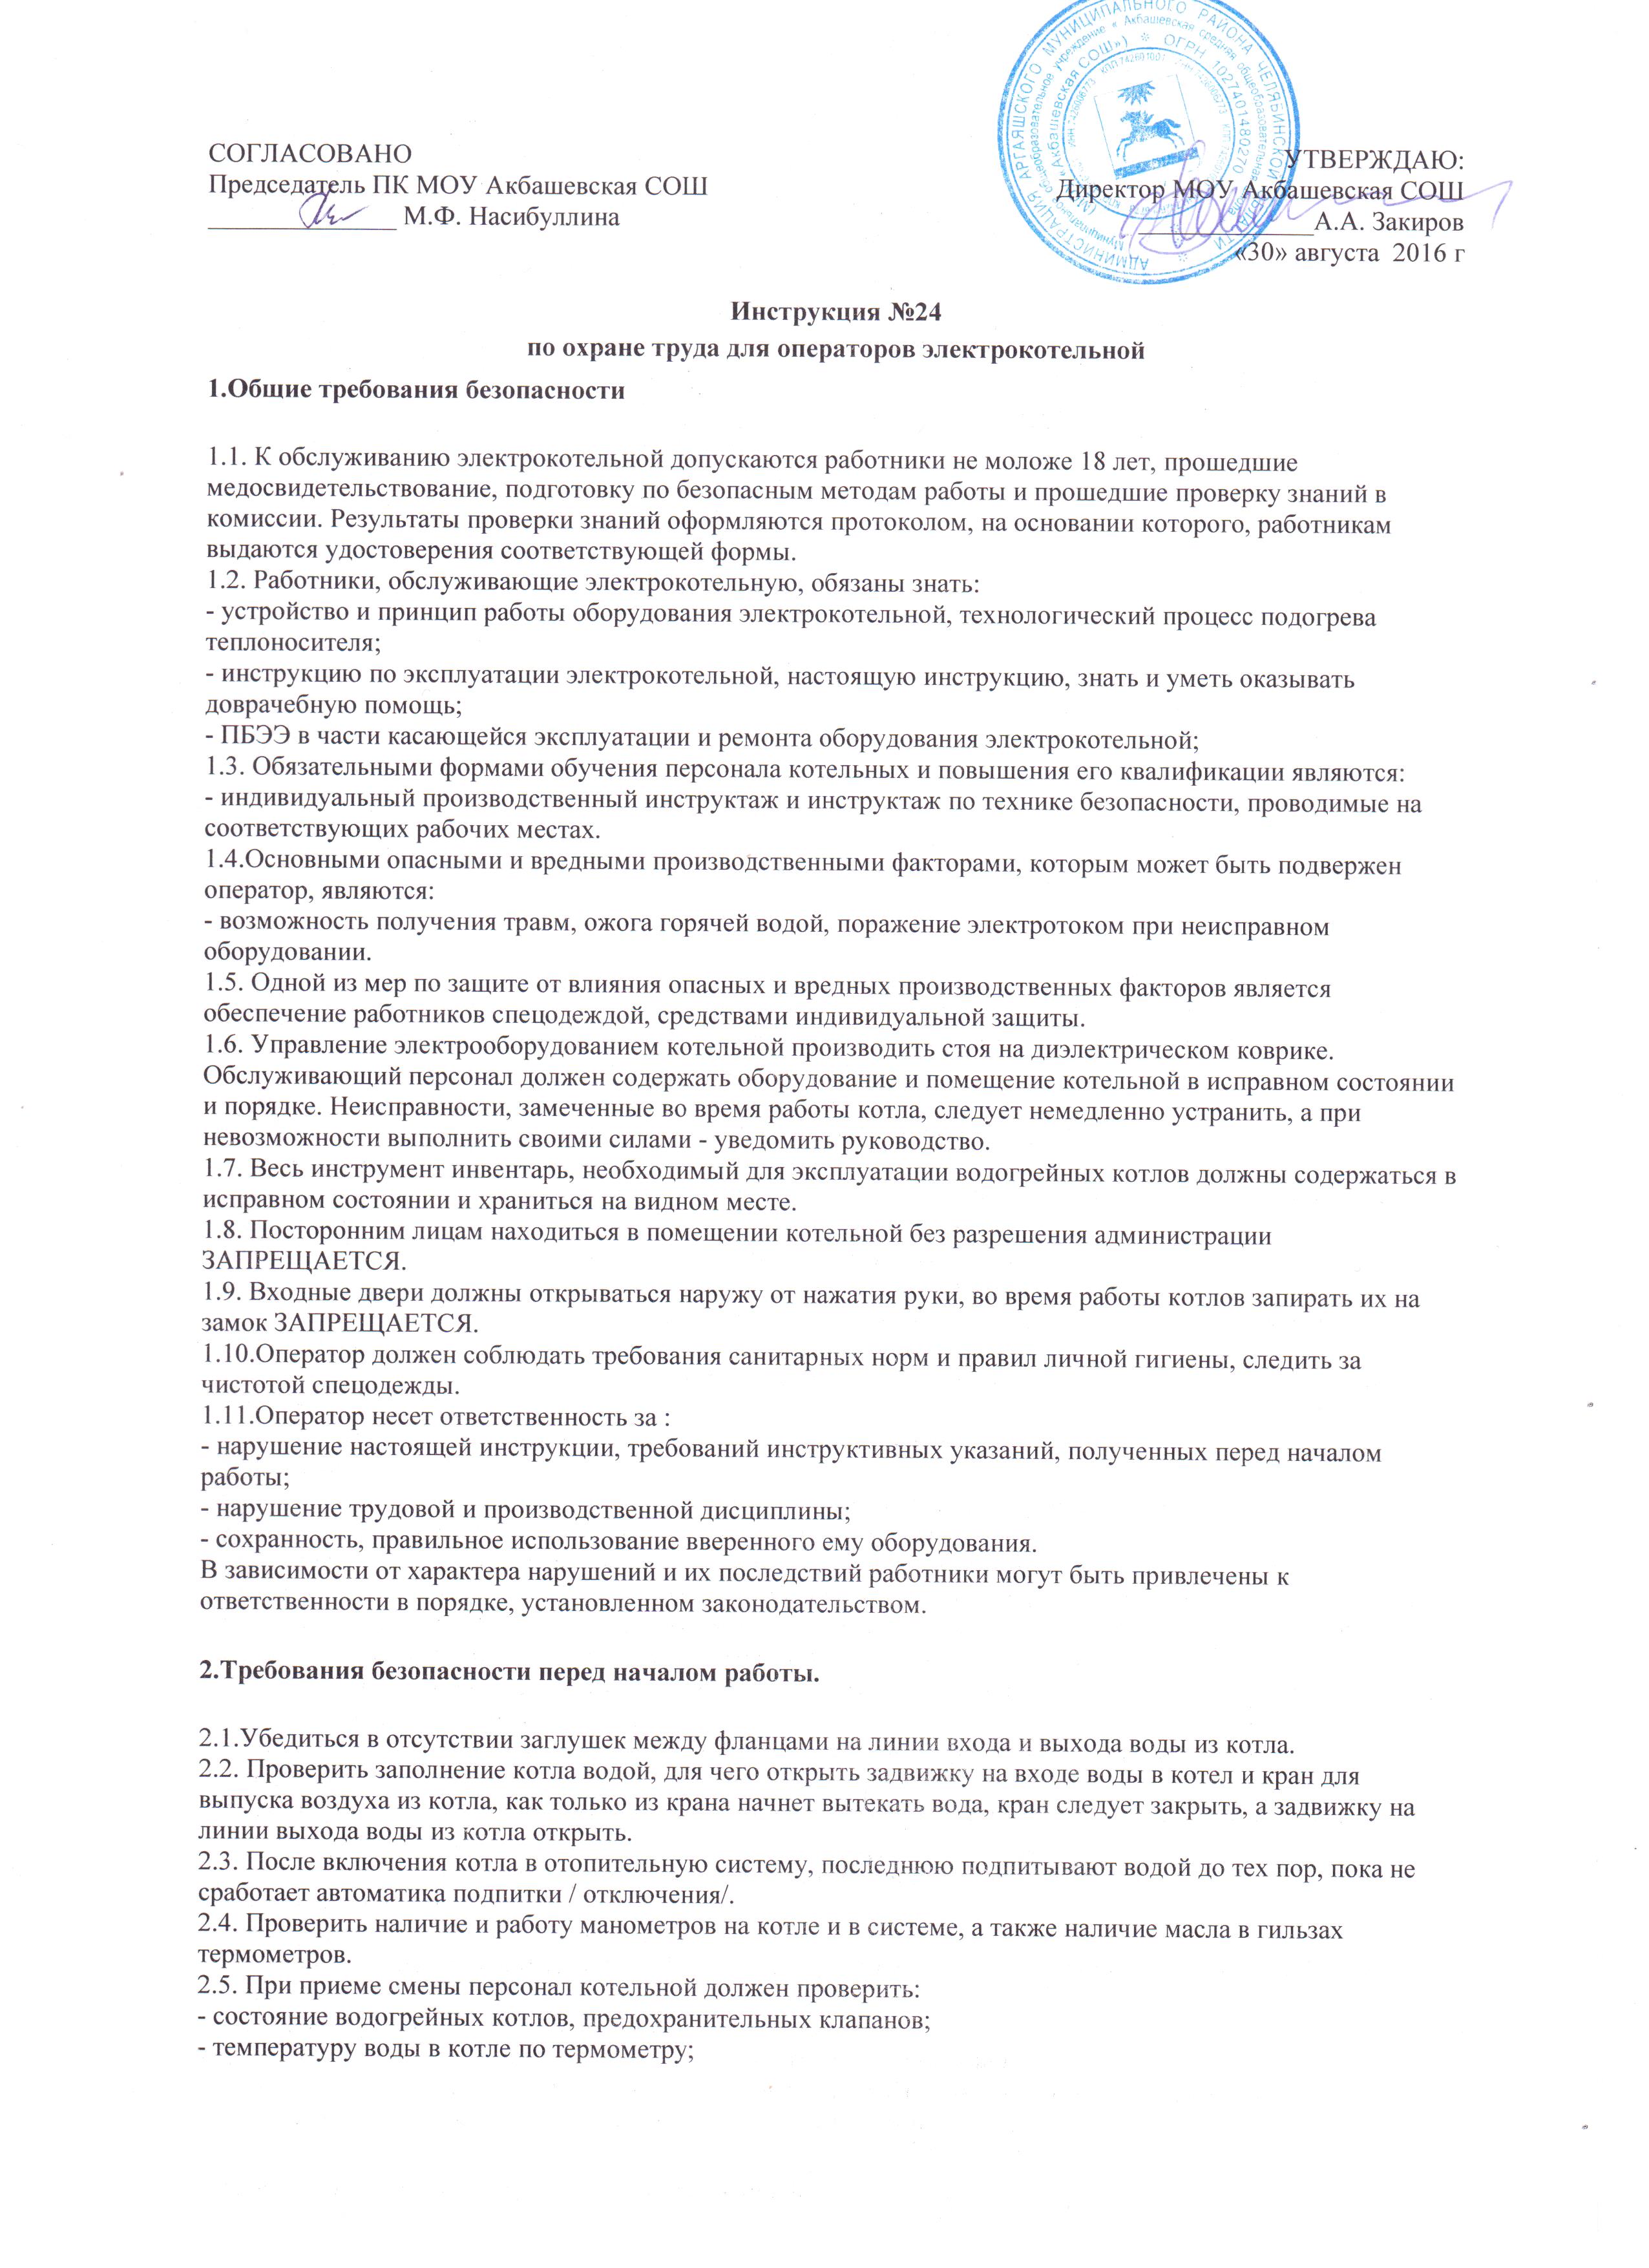 Инструкция по охране труда для учителя русского языка